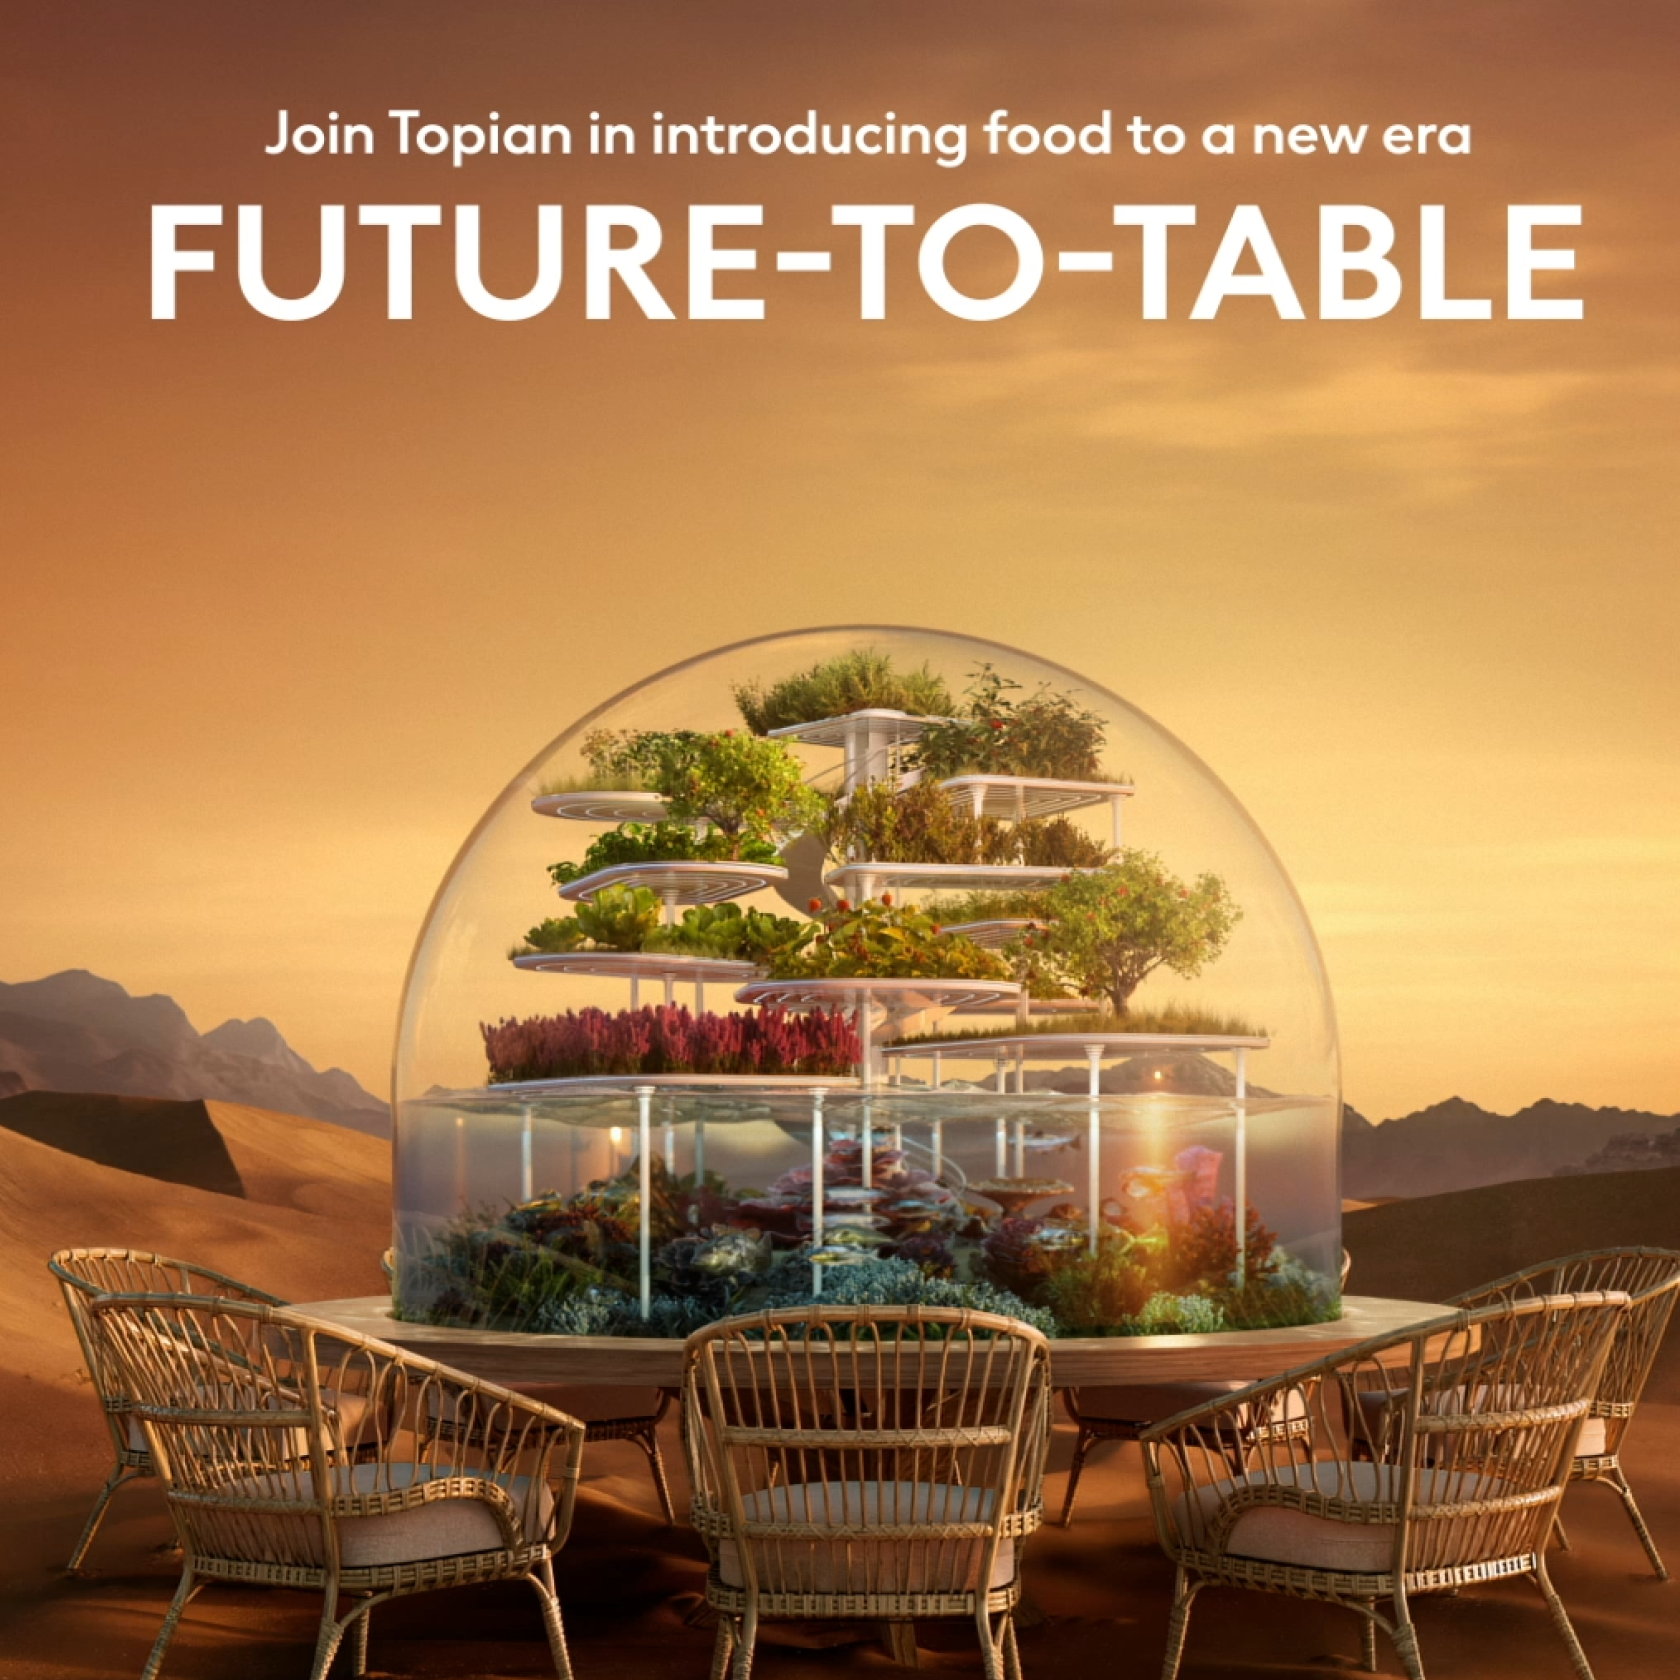 Rejoignez Topian pour introduire l'alimentation dans une nouvelle ère